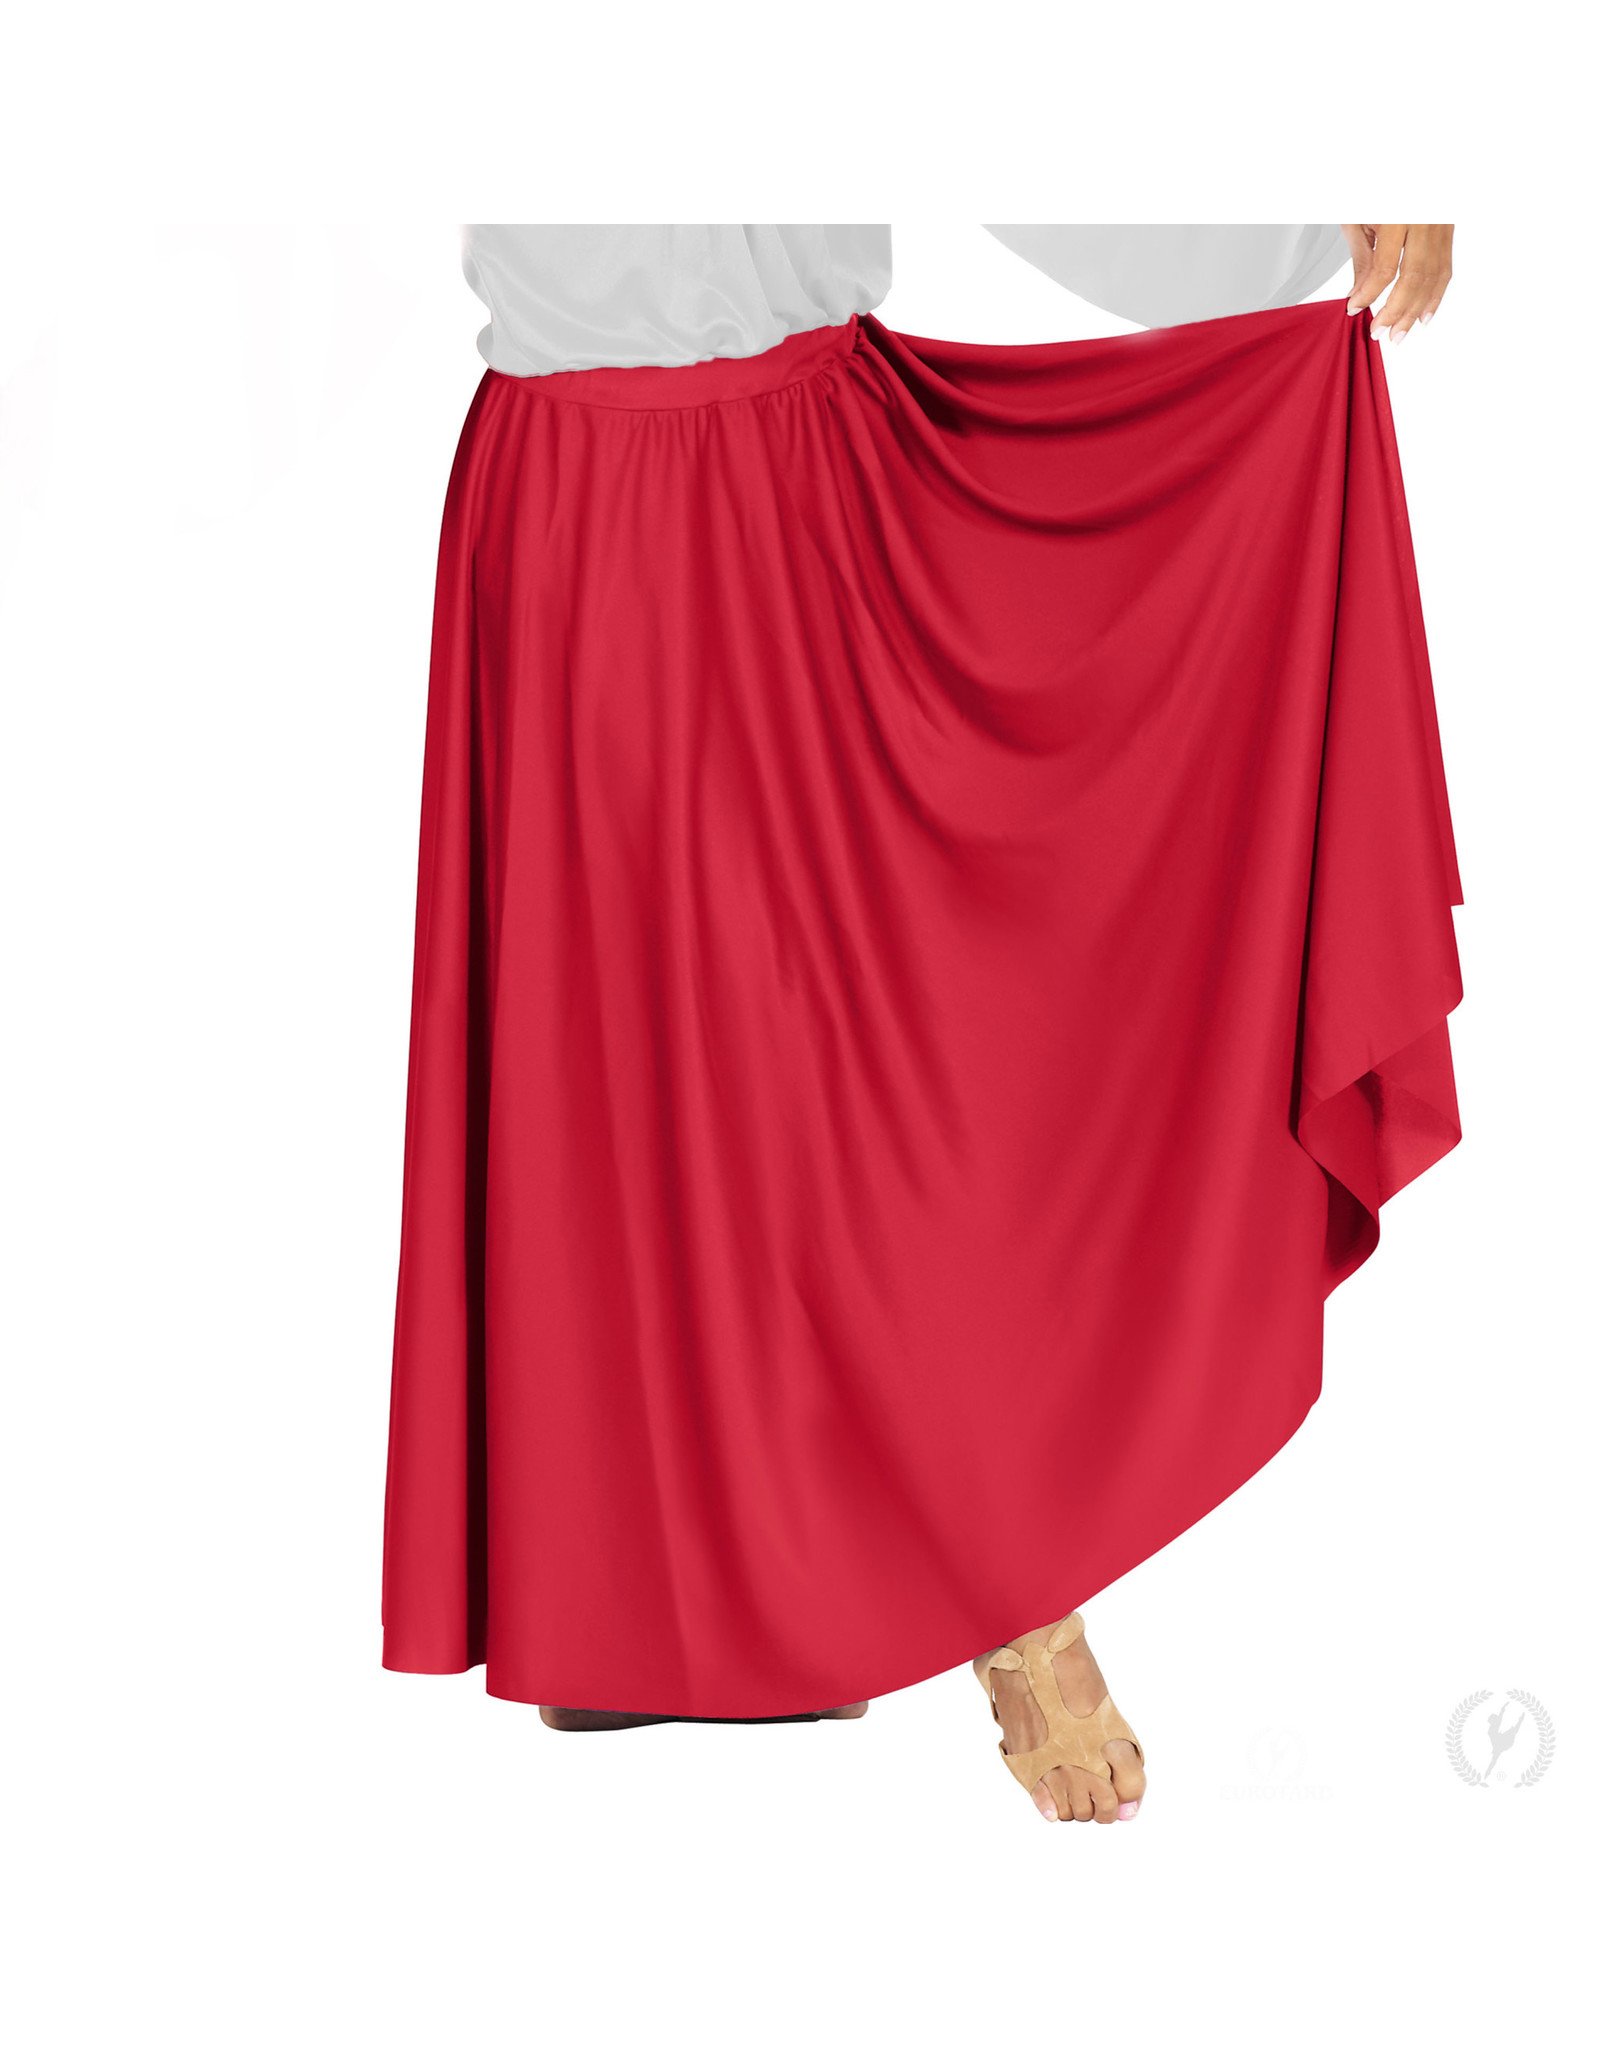 Eurotard Adult Plus Circle Skirt (13778P)